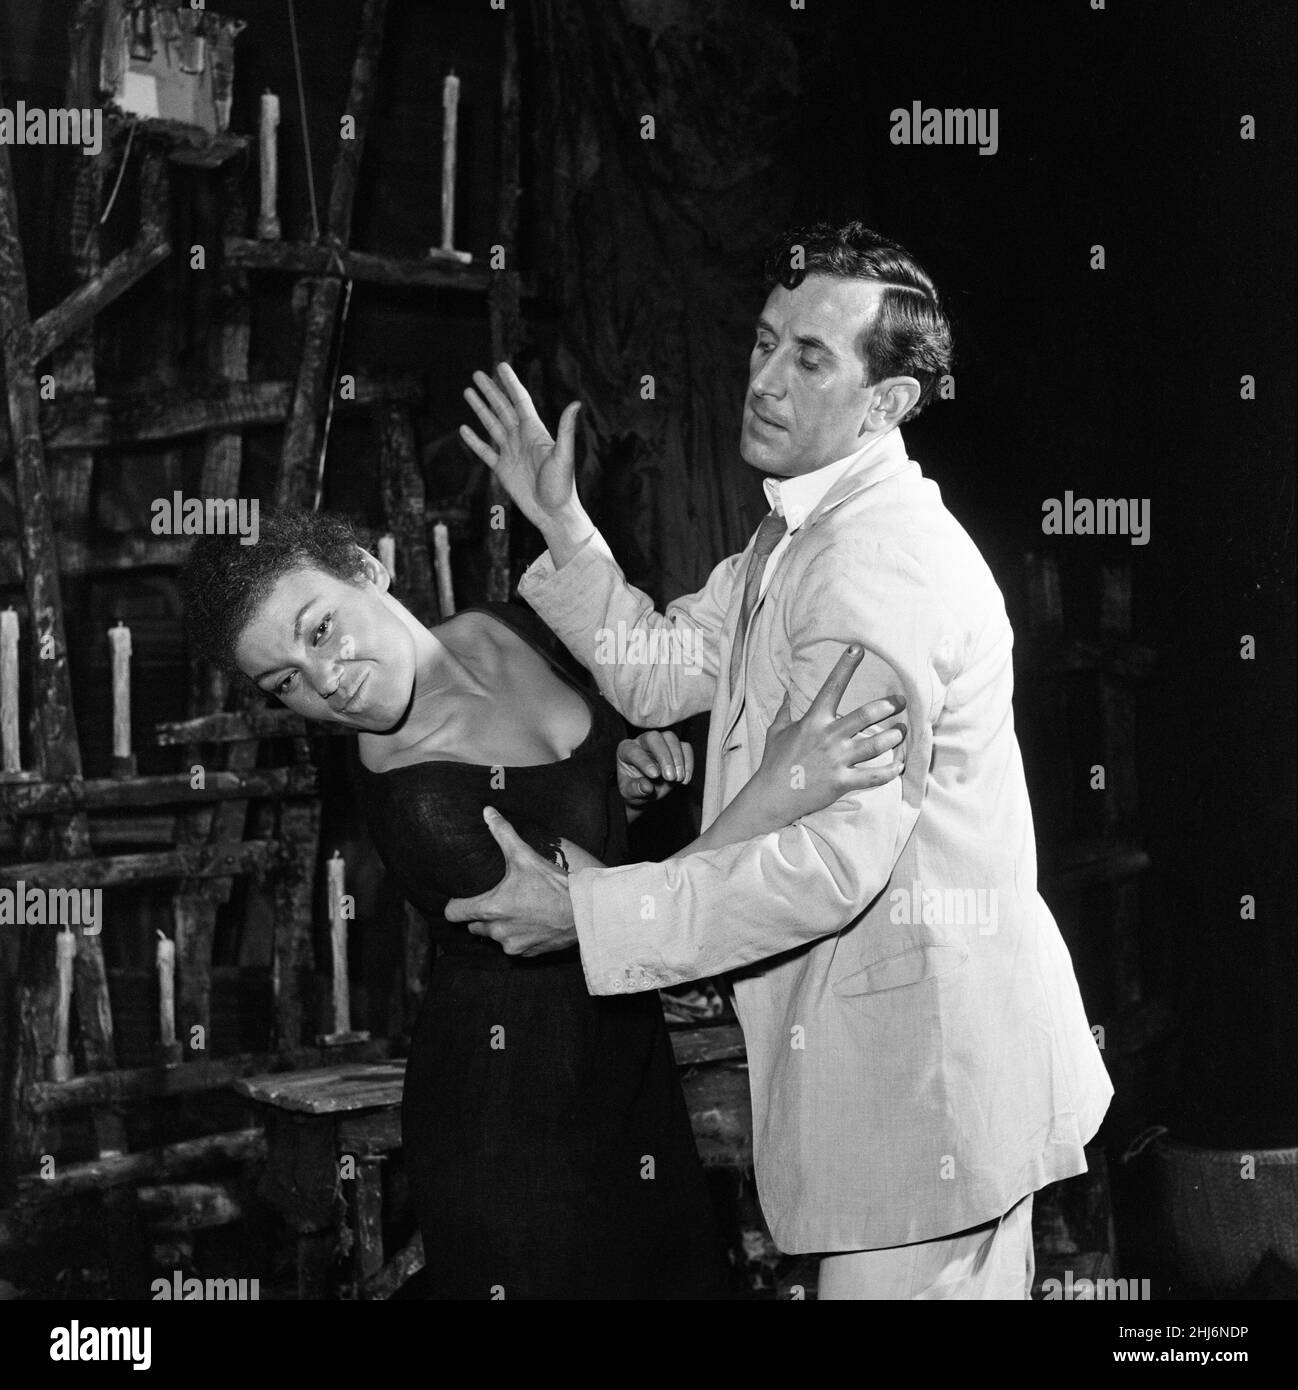 Eine Probe von 'Flesh to a Tiger', einem westindischen Stück, das am 21st. Mai im Royal Court Theatre Premiere haben wird. Mit dabei ist Cleo Laine, obwohl sie als Sängerin bekannt ist, dies ist ihre erste dramatische Rolle, sie spielt 'della'. Im Bild eine Szene zwischen 'della' (Cleo Laine) und dem Arzt (Edgar Wreford). 20th Mai 1958. Stockfoto